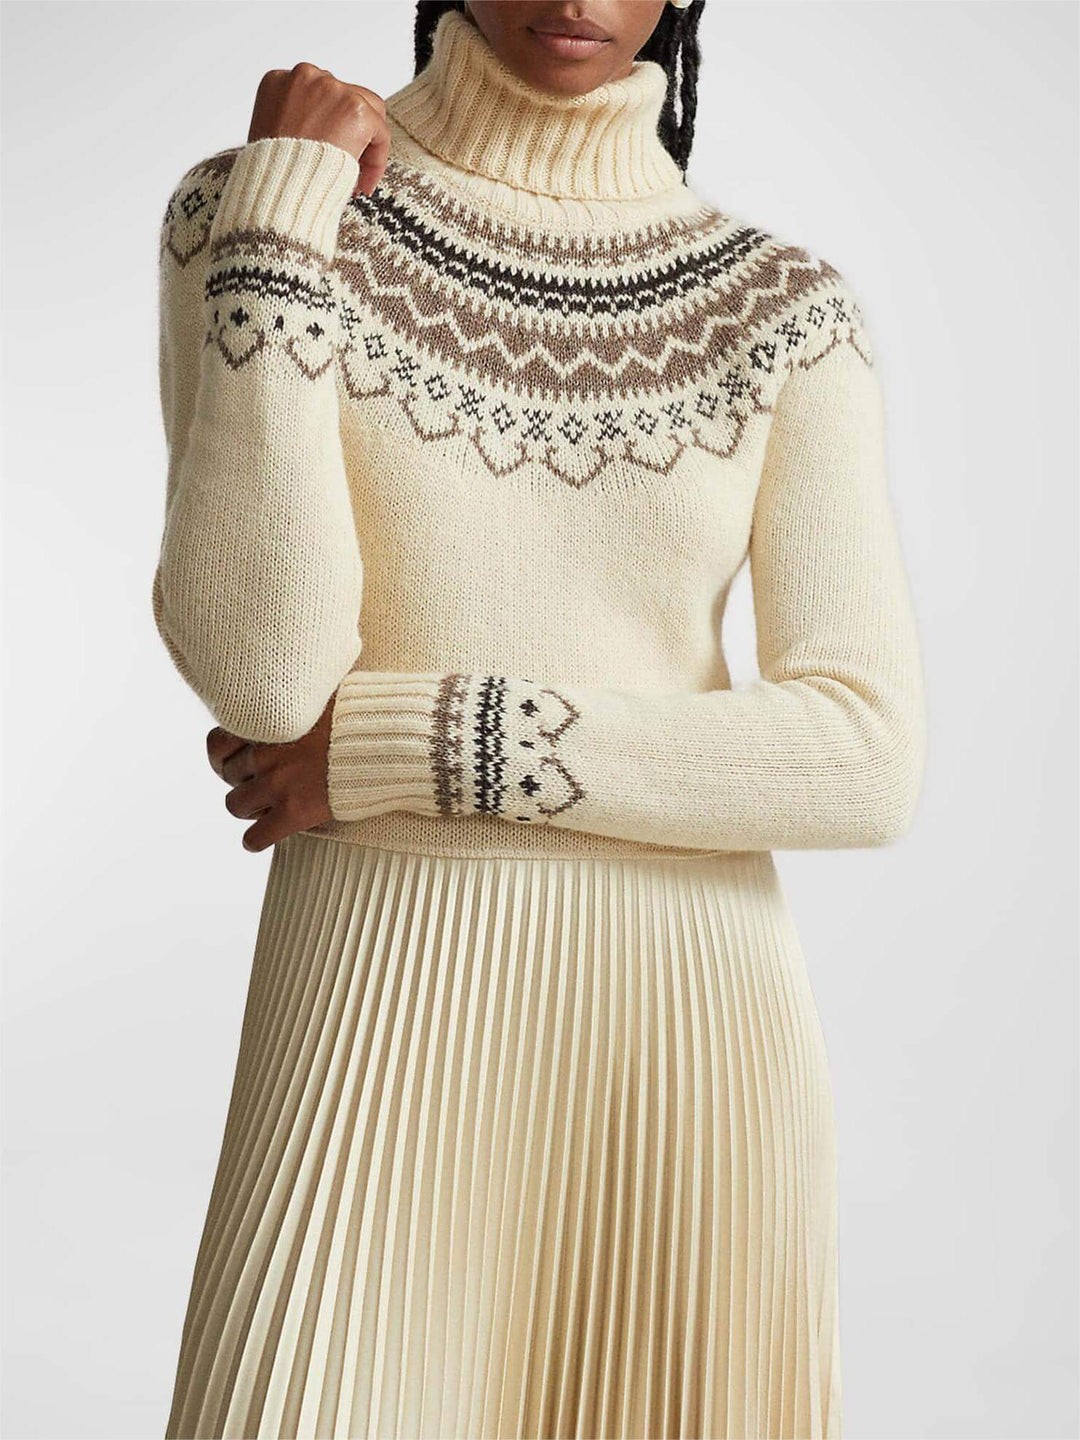 하이브리드 스웨터 플리츠 터틀넥 드레스